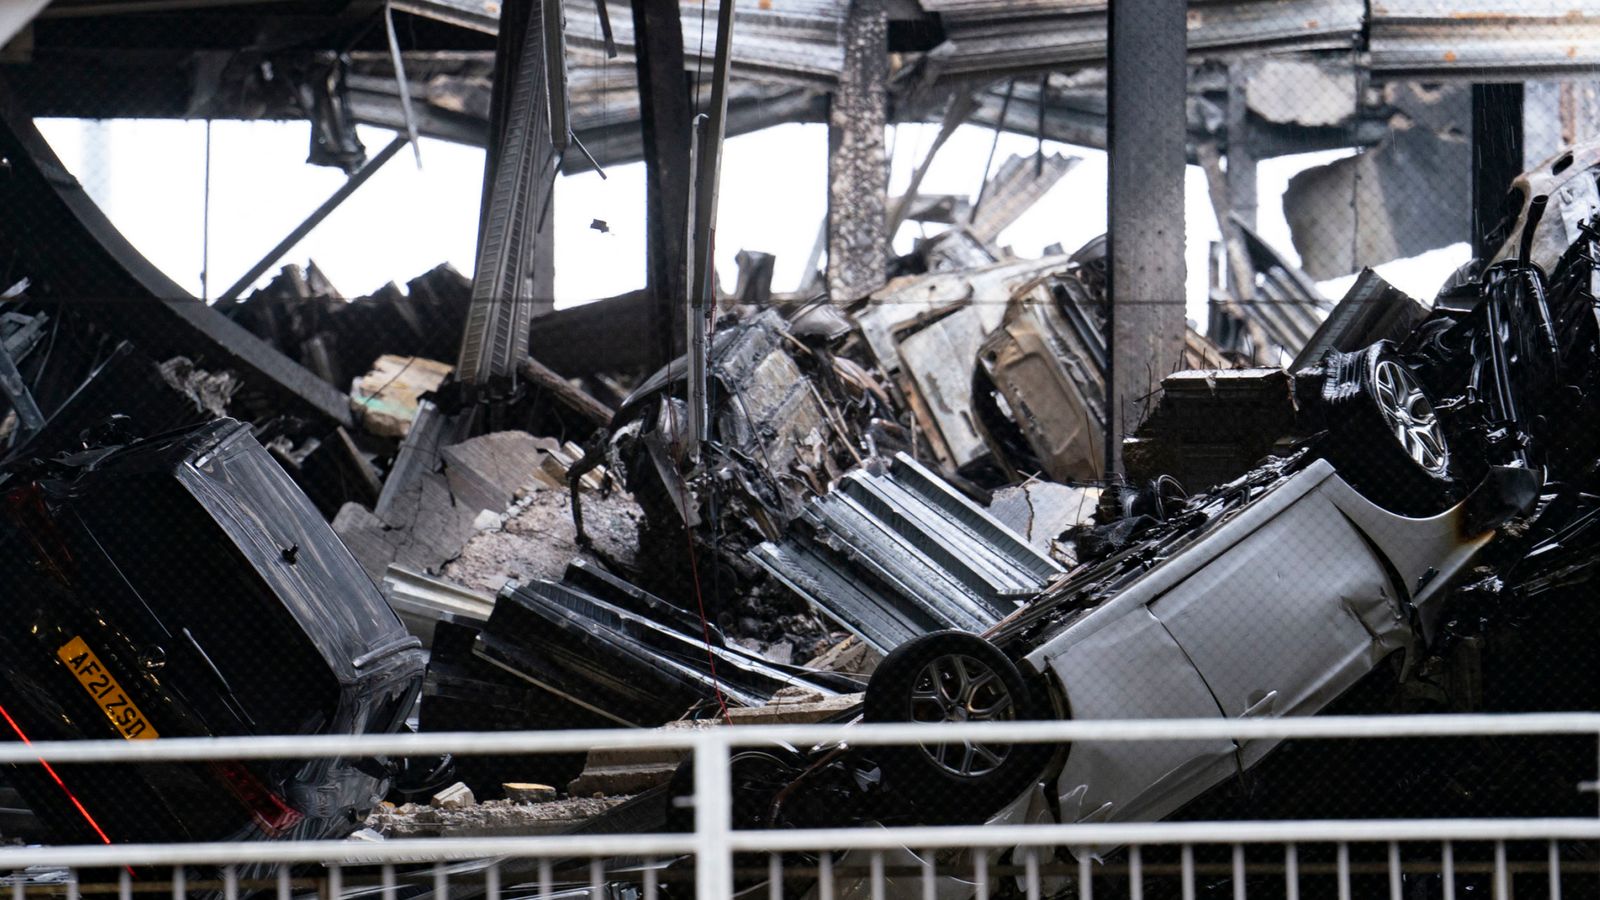 حريق مطار لوتون: “ارتياح” المصطافين بعد حريق في موقف للسيارات |  أخبار المملكة المتحدة